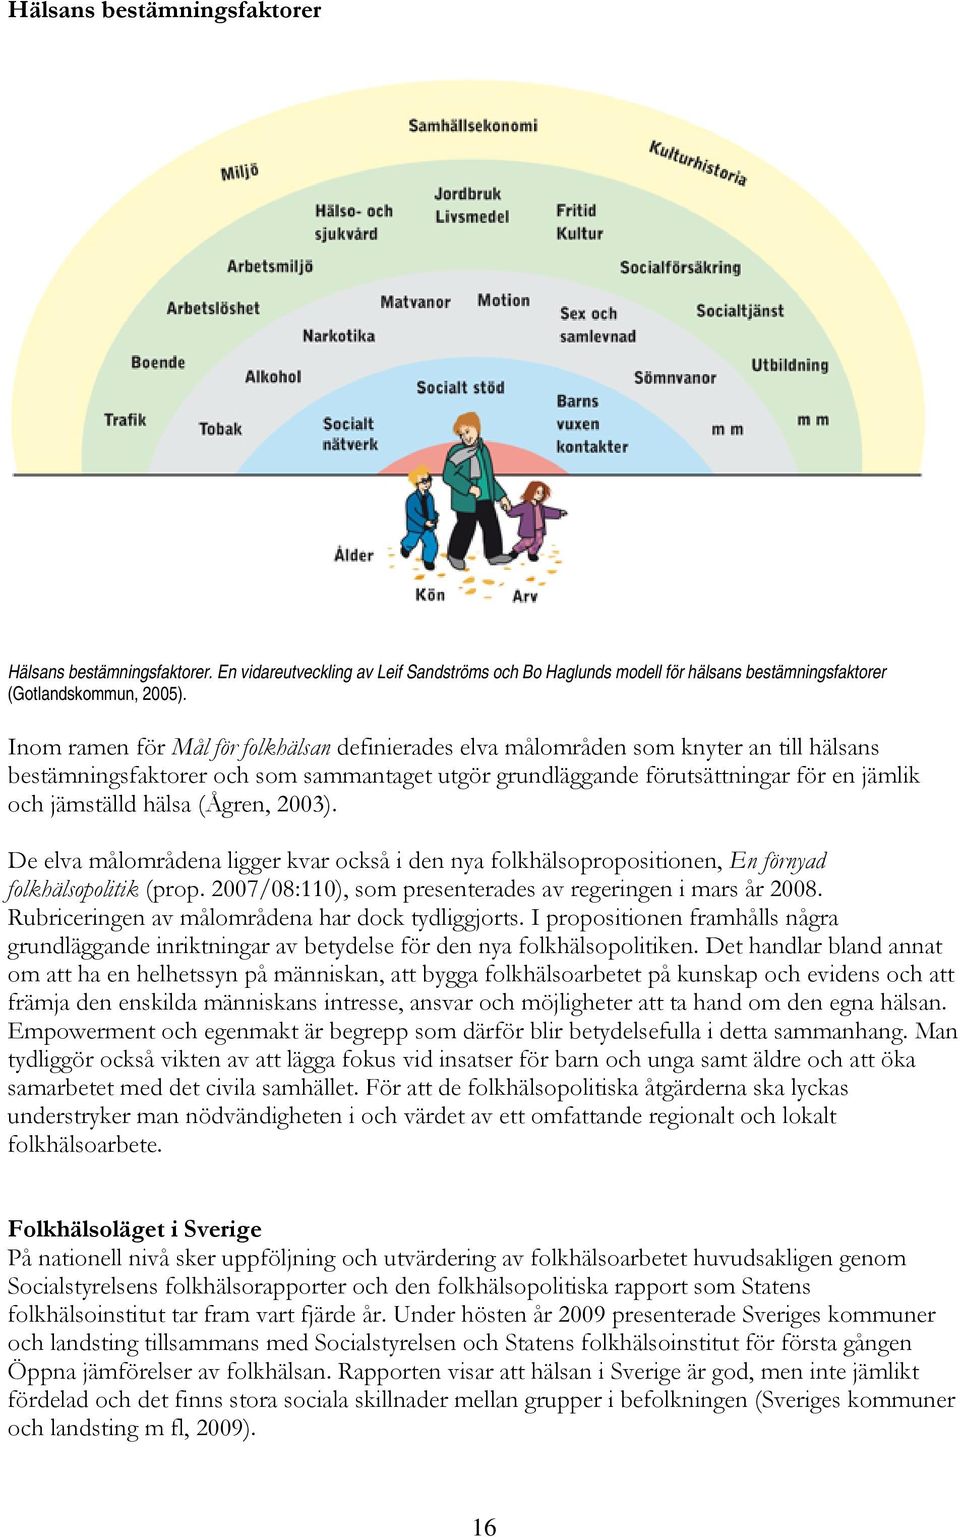 (Ågren, 2003). De elva målområdena ligger kvar också i den nya folkhälsopropositionen, En förnyad folkhälsopolitik (prop. 2007/08:110), som presenterades av regeringen i mars år 2008.